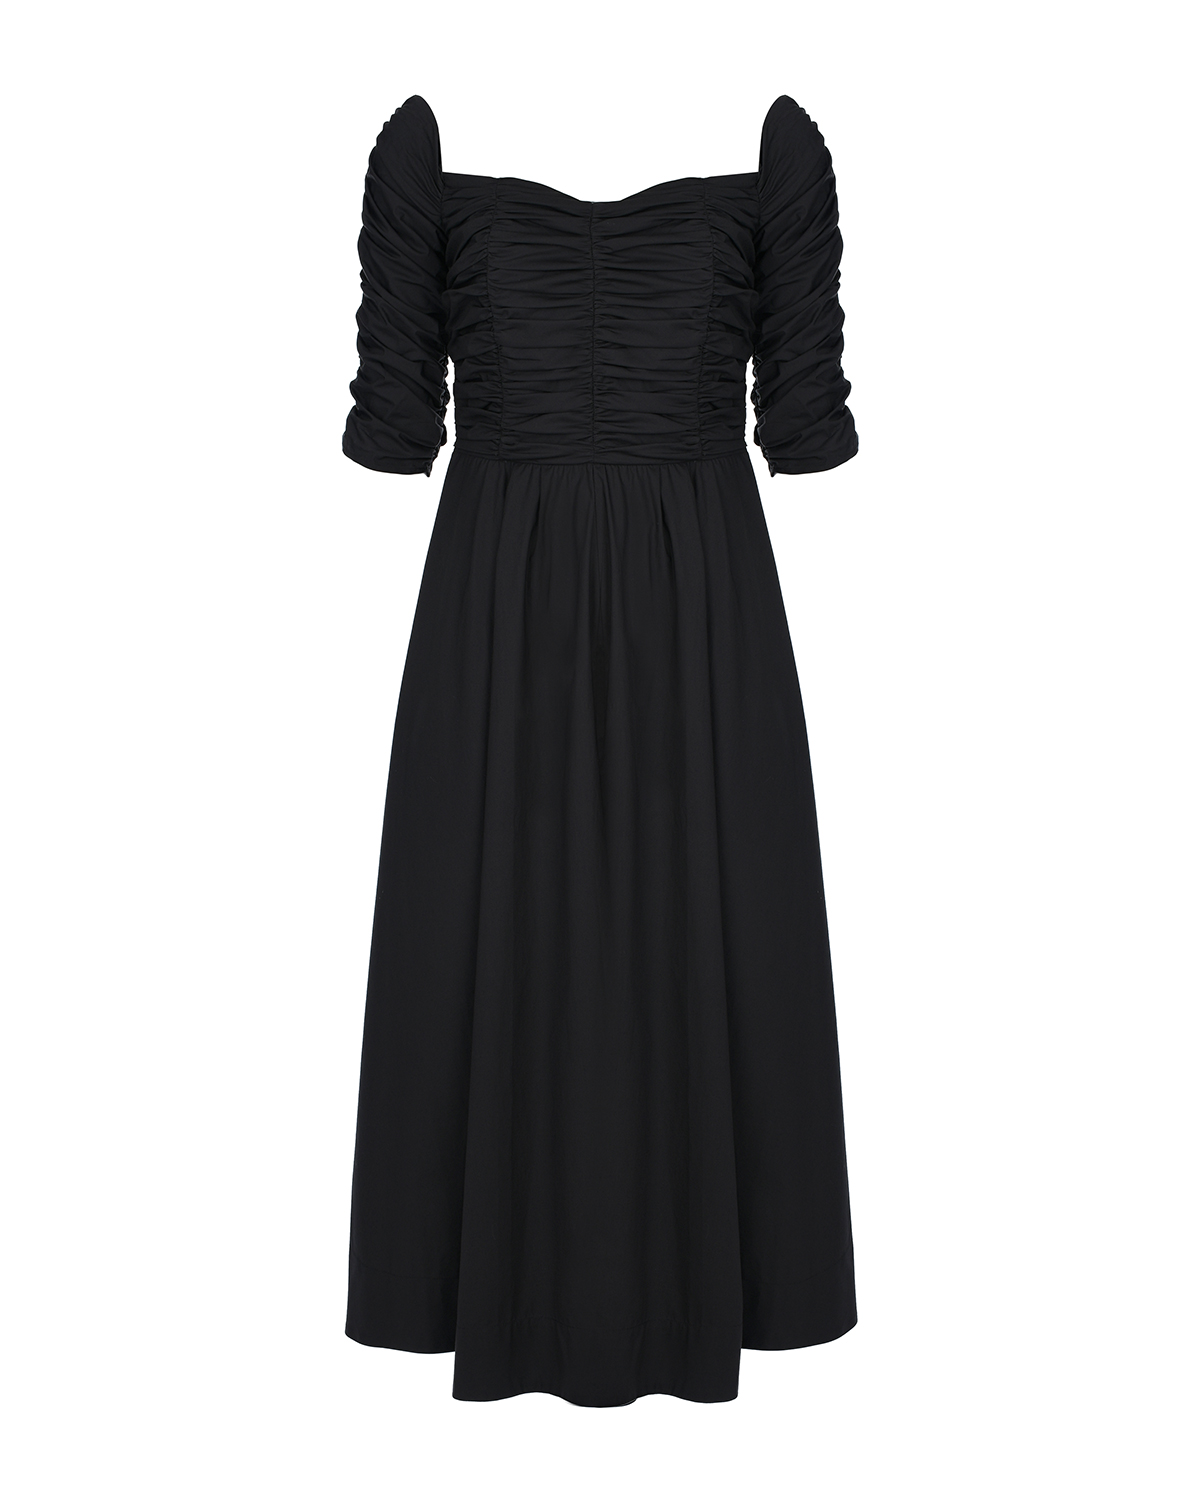 Черное платье с открытыми плечами Dorothee Schumacher, размер 44, цвет черный - фото 1